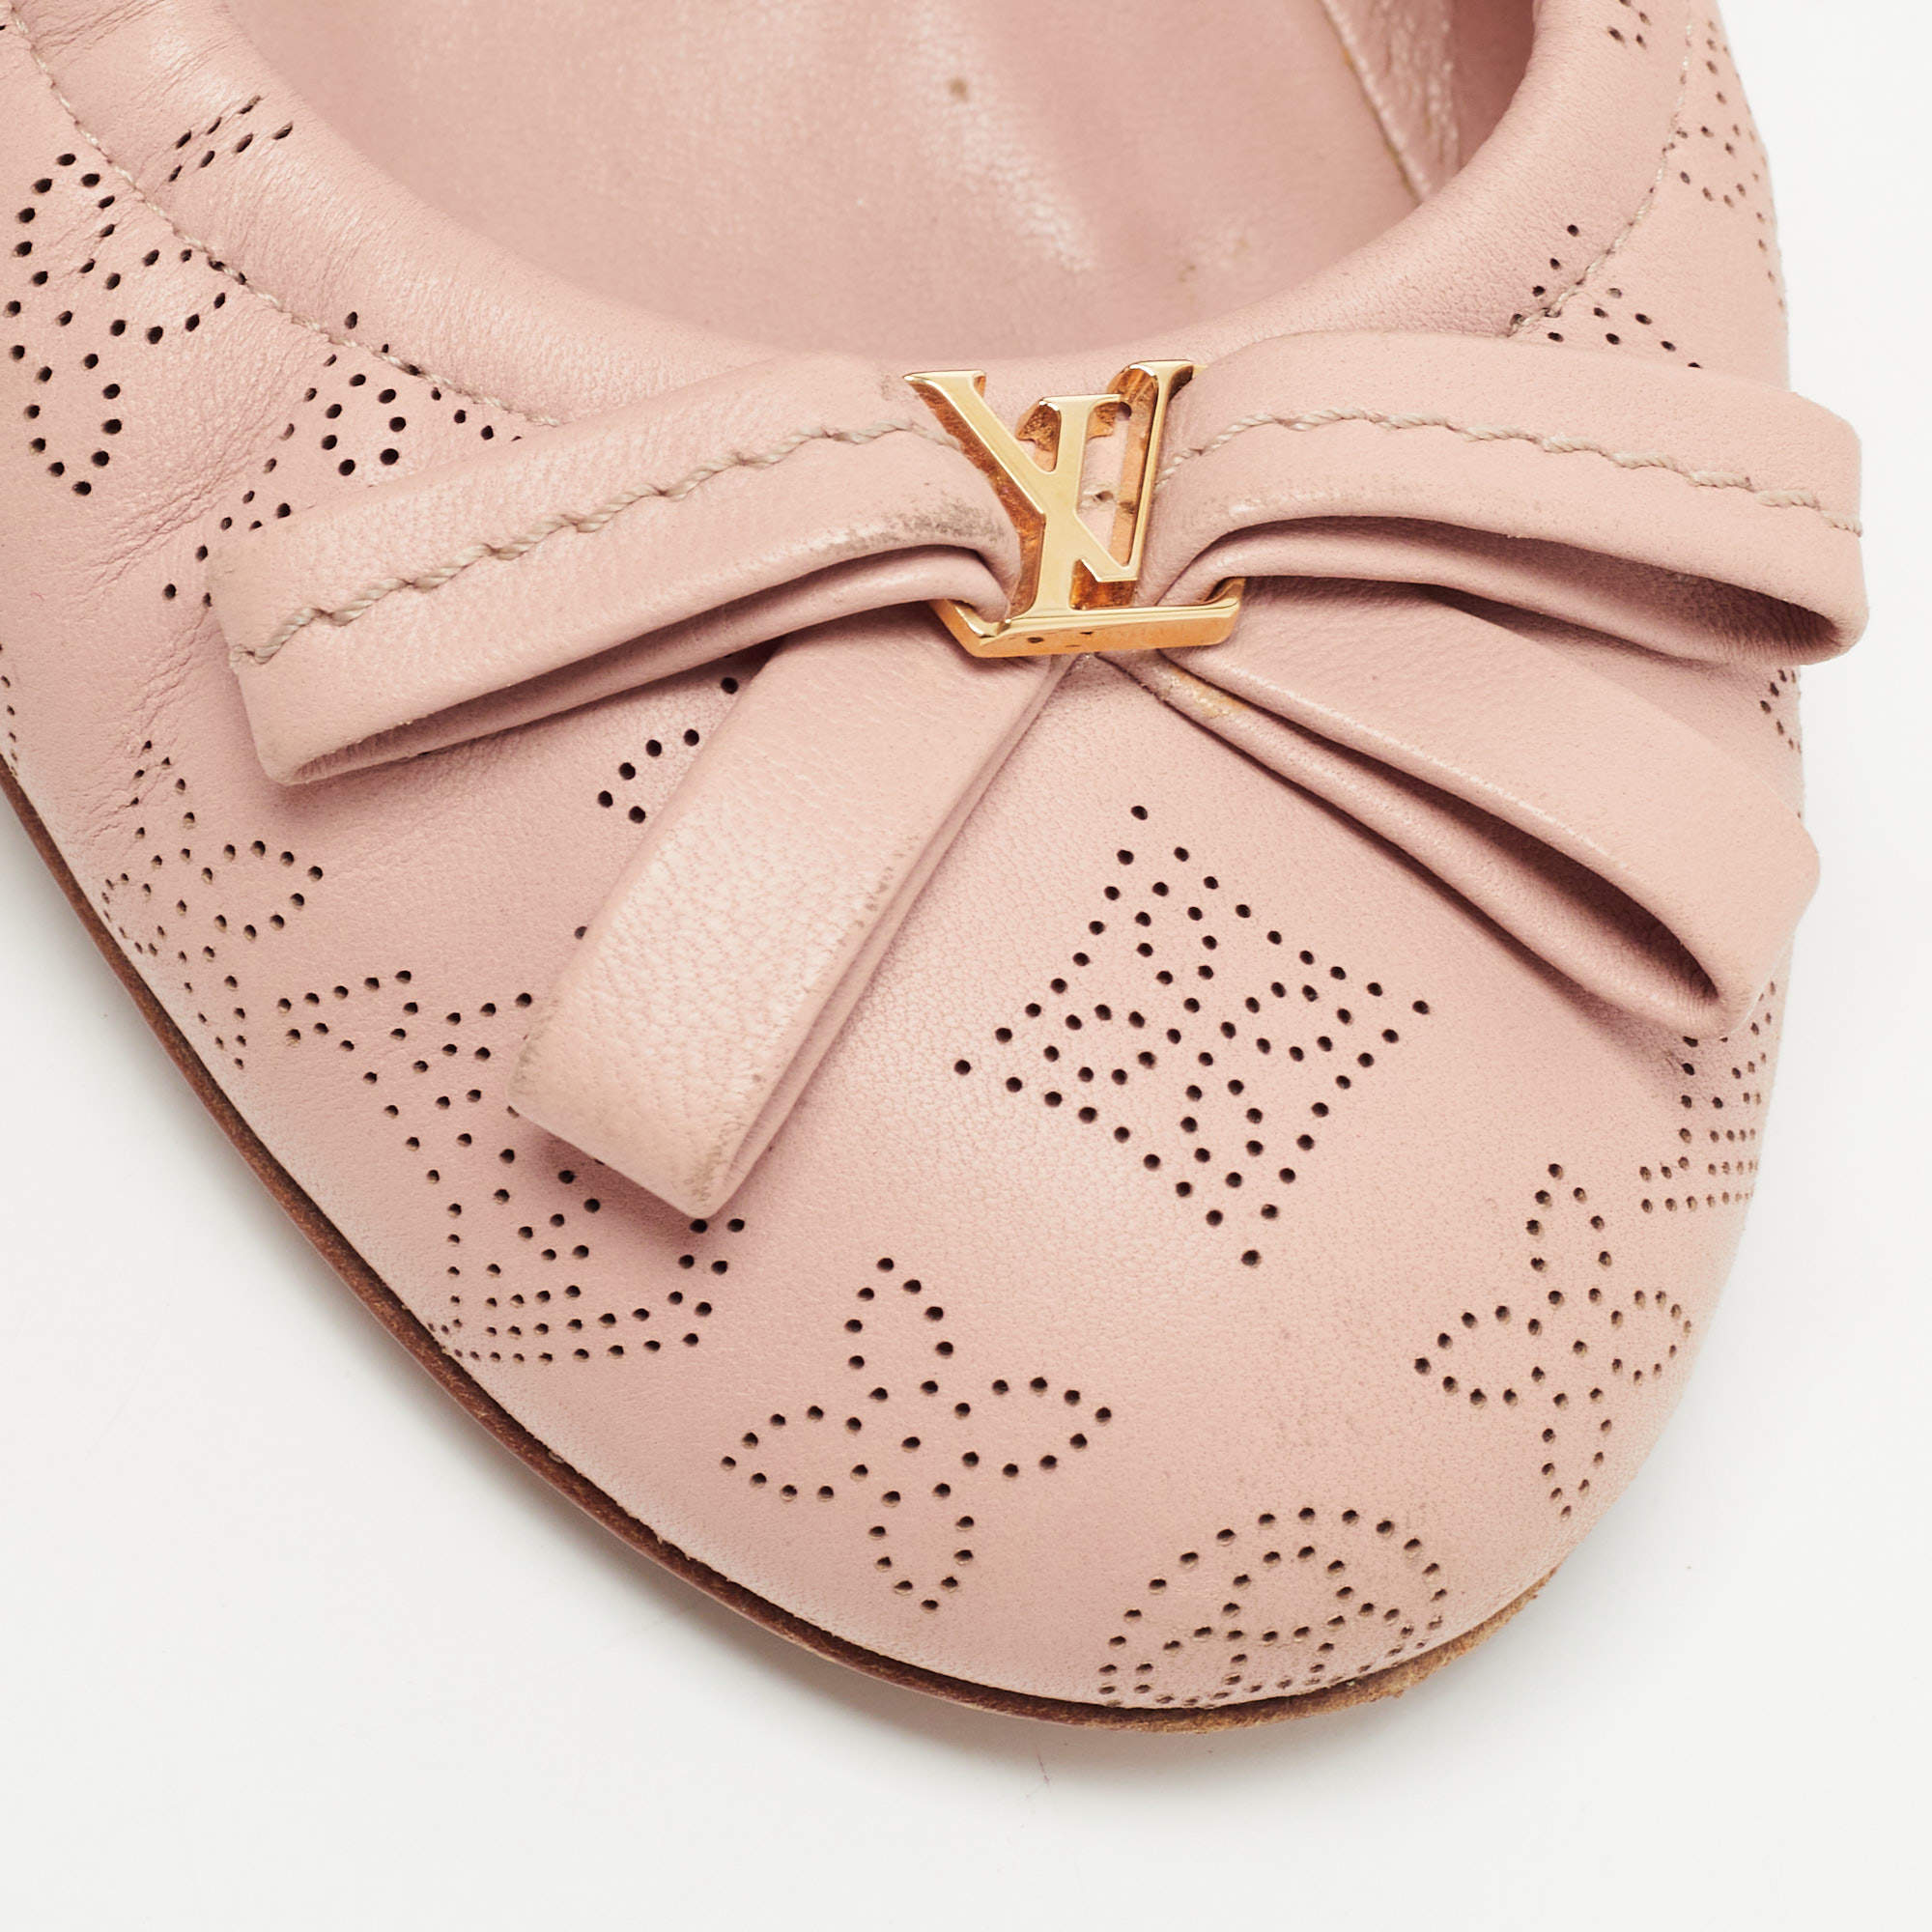 Louis Vuitton Insider Ballet Flat Slingback Ballerina Shoes Sz 38